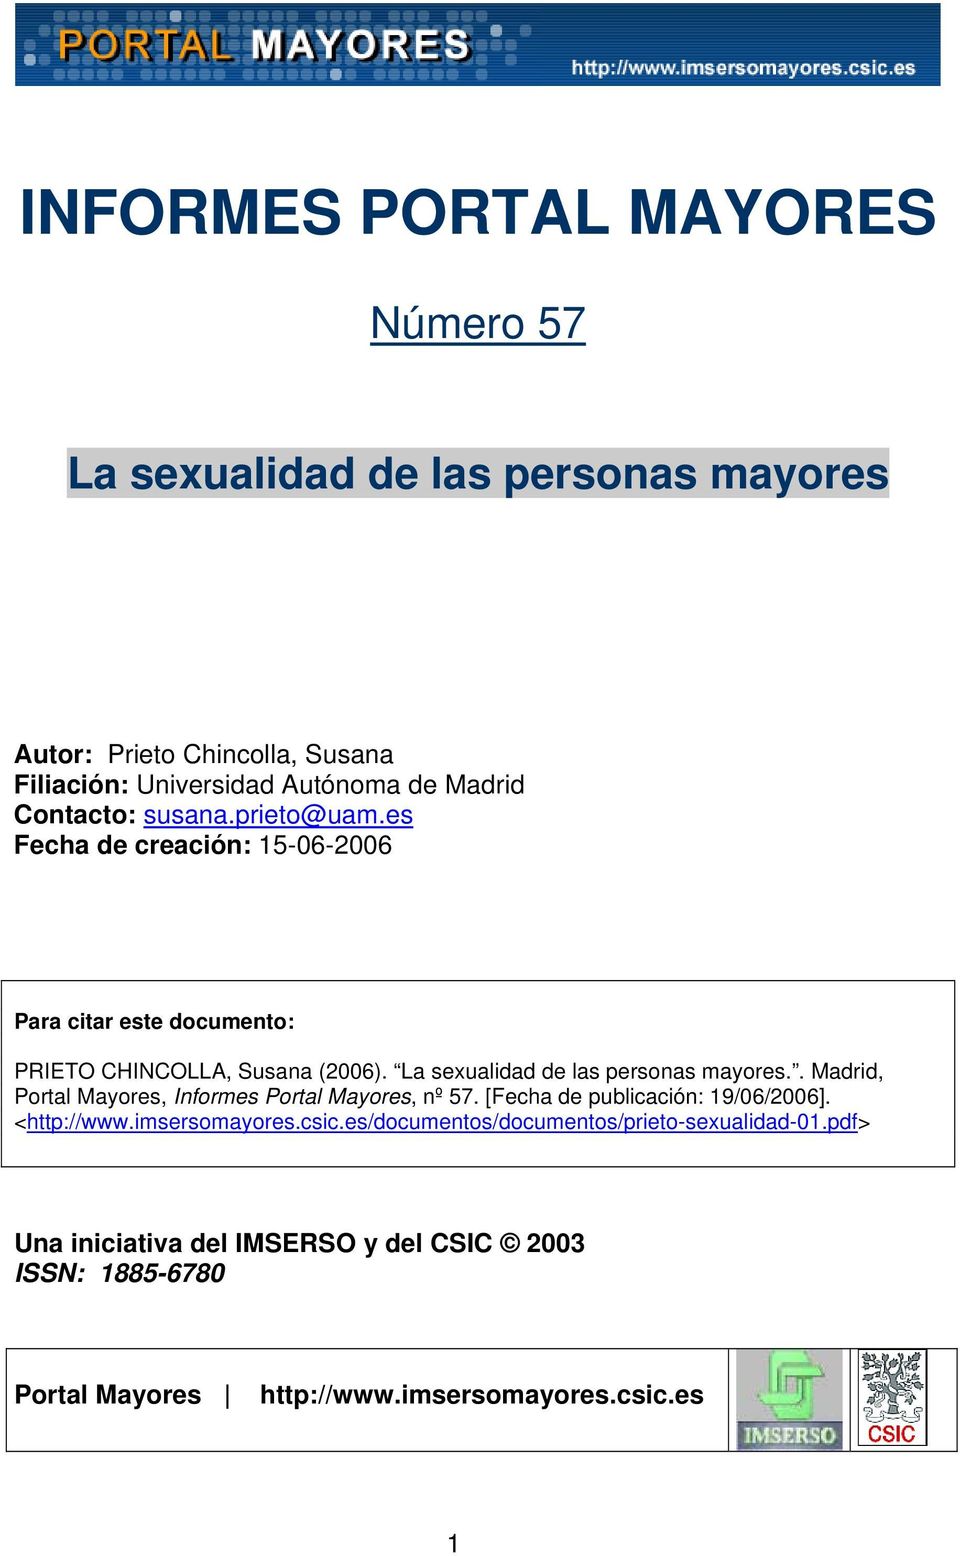 La sexualidad de las personas mayores.. Madrid, Portal Mayores, Informes Portal Mayores, nº 57. [Fecha de publicación: 19/06/2006]. <http://www.